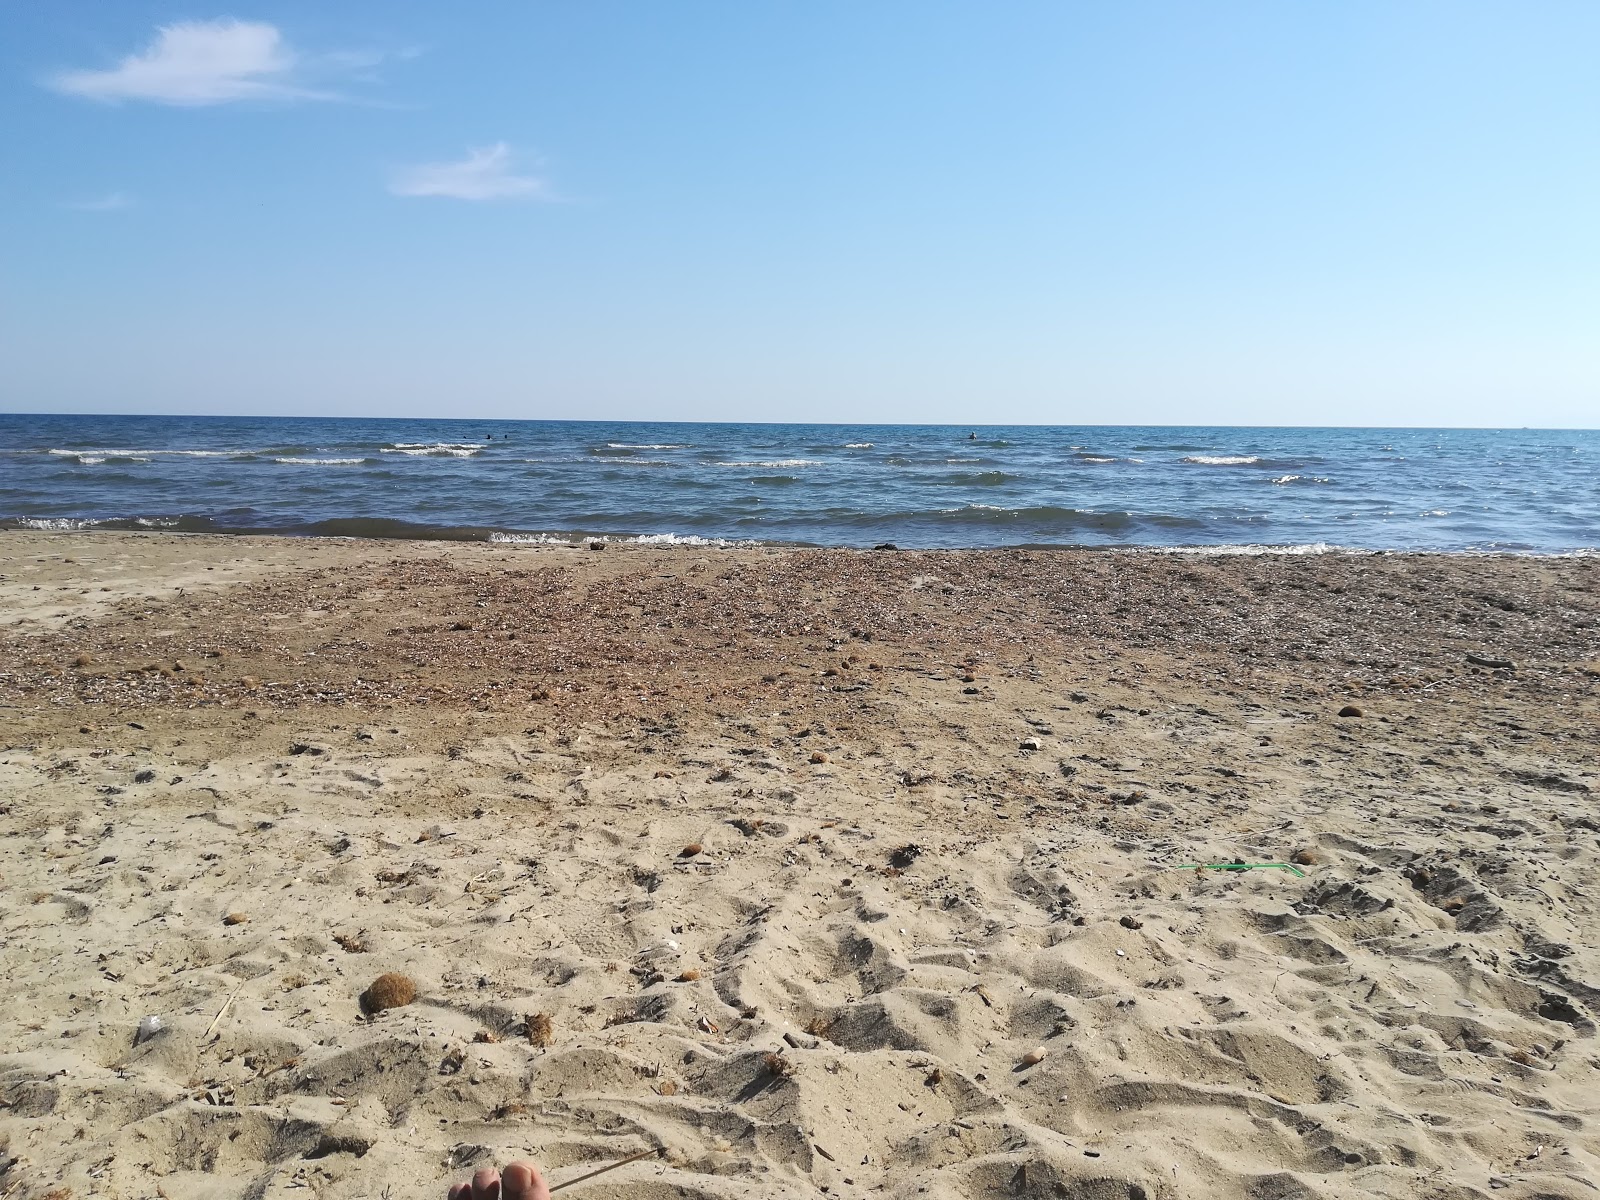 Fotografie cu Imeros beach cu o suprafață de nisip strălucitor